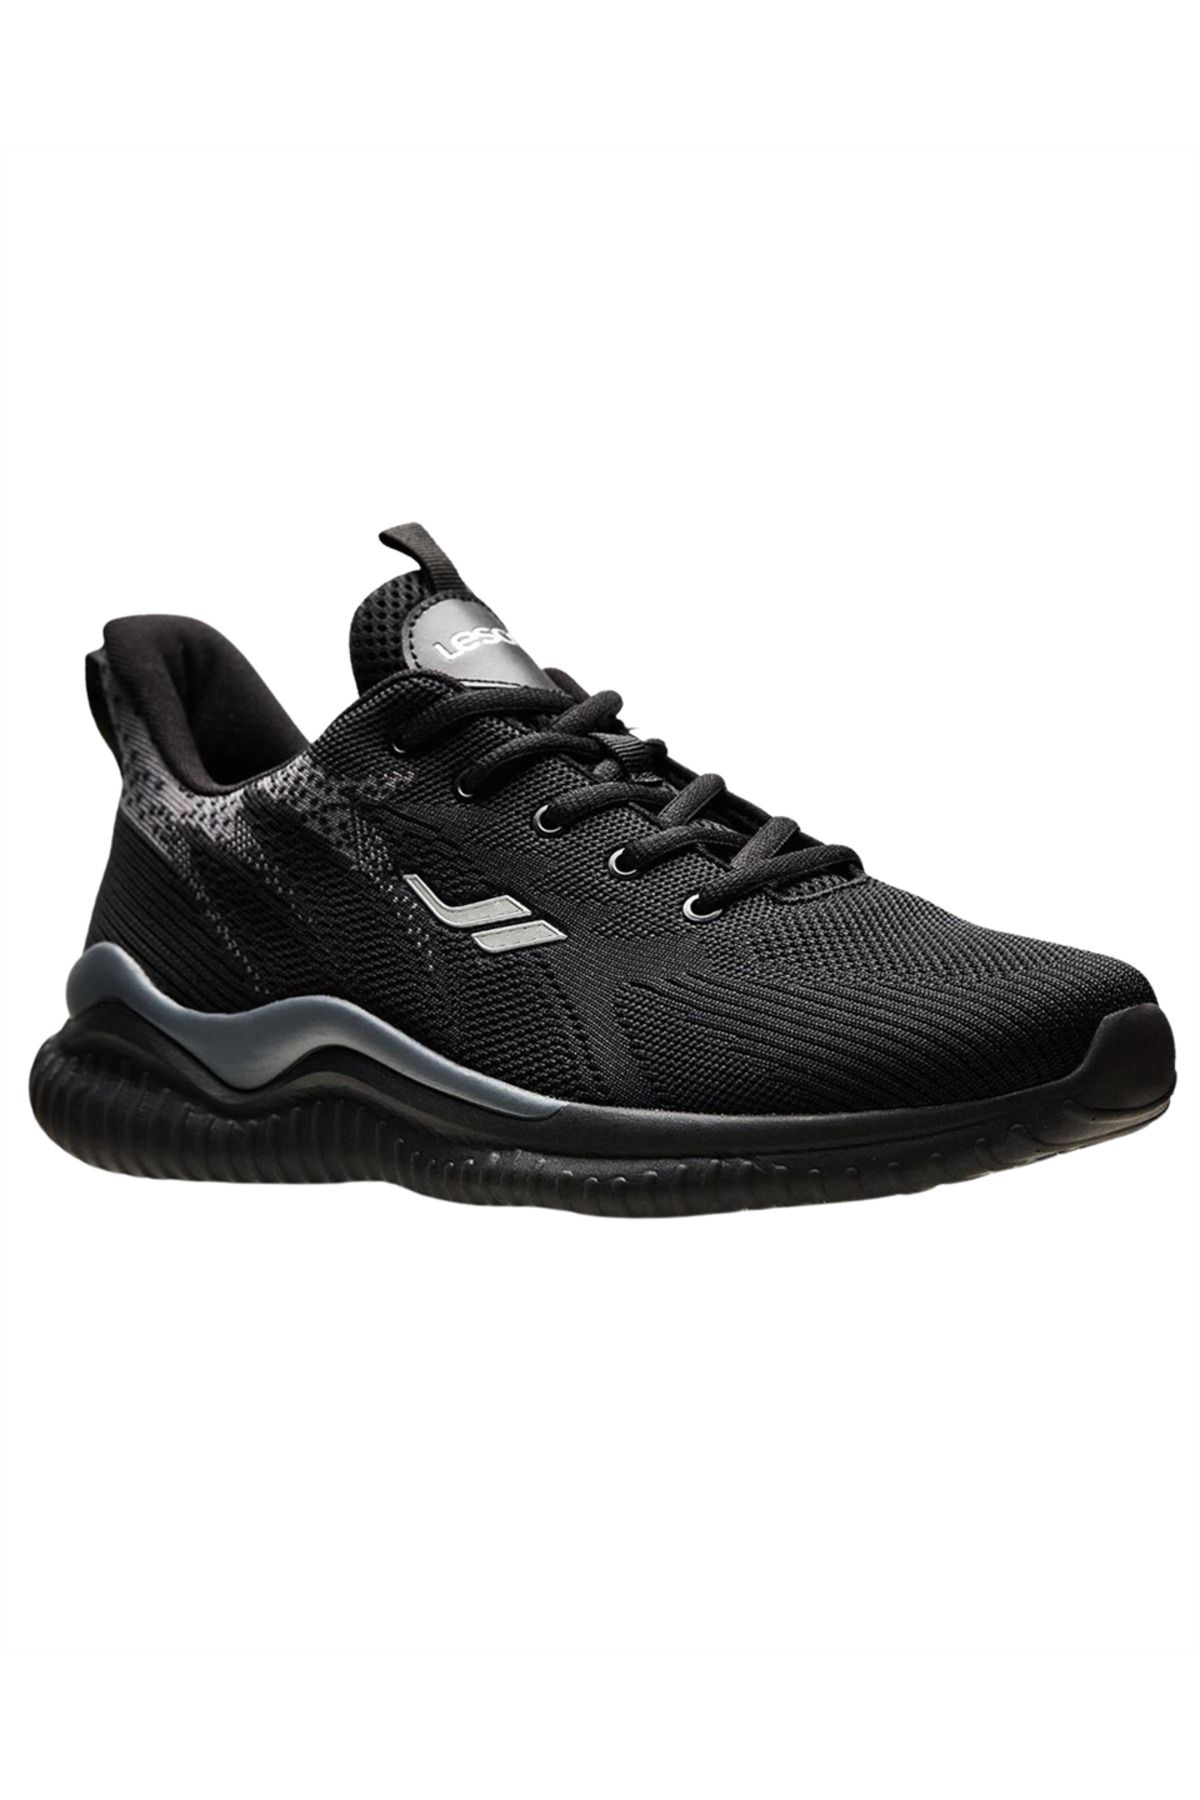 Lescon Hellium Etna 3 Erkek Siyah Günlük Spor Ayakkabı